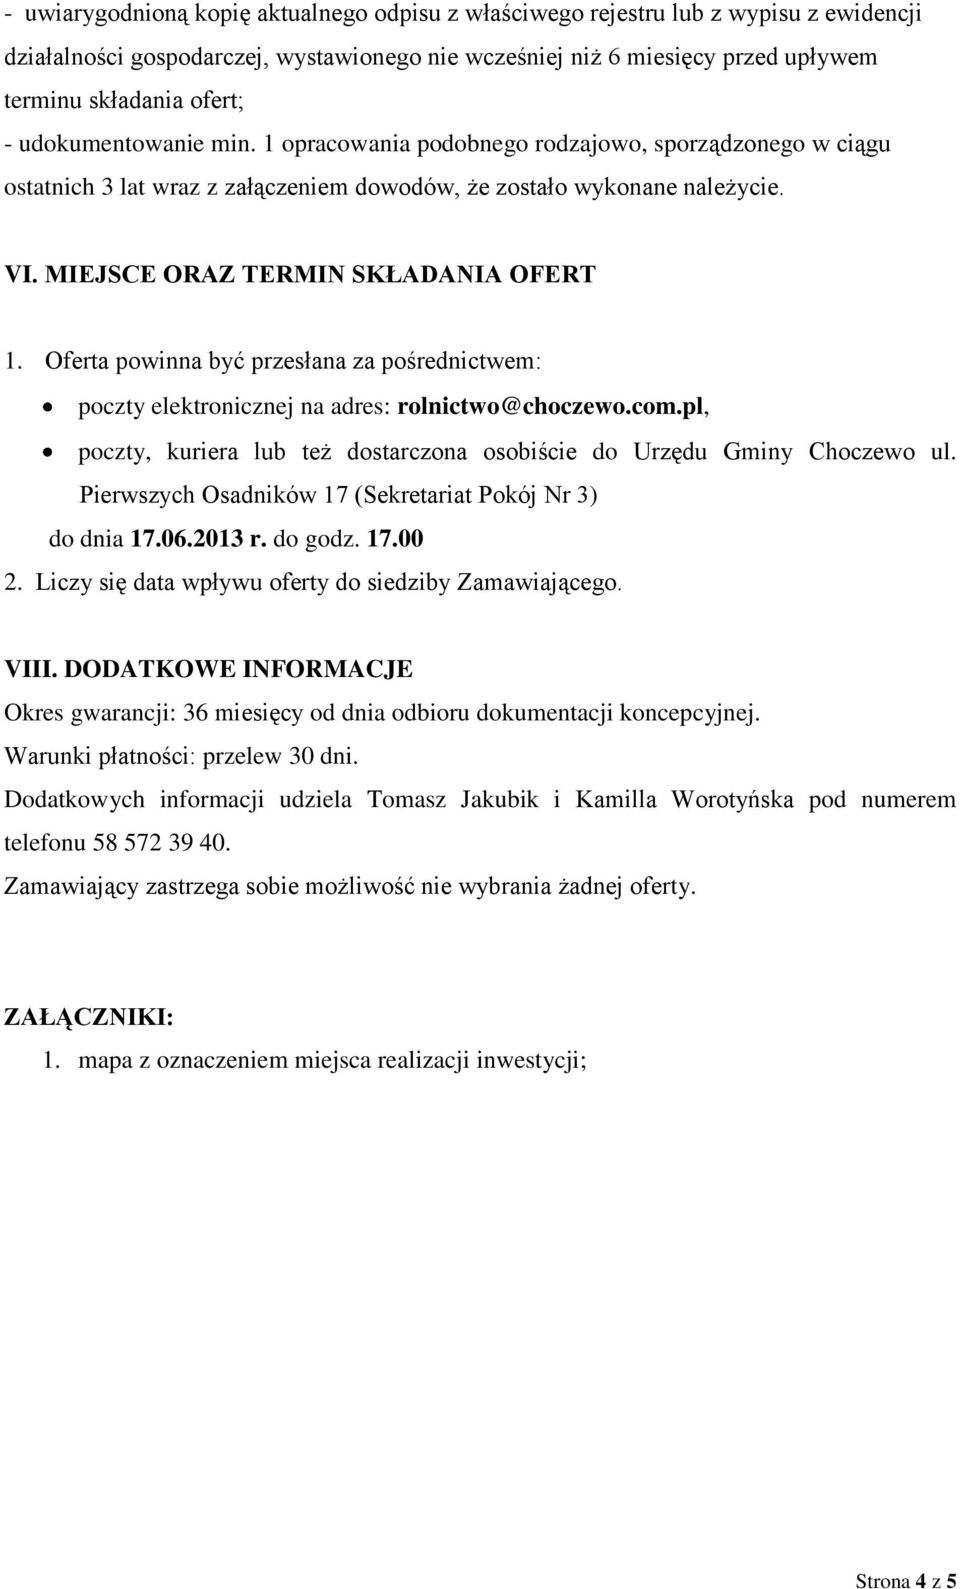 Oferta powinna być przesłana za pośrednictwem: poczty elektronicznej na adres: rolnictwo@choczewo.com.pl, poczty, kuriera lub też dostarczona osobiście do Urzędu Gminy Choczewo ul.